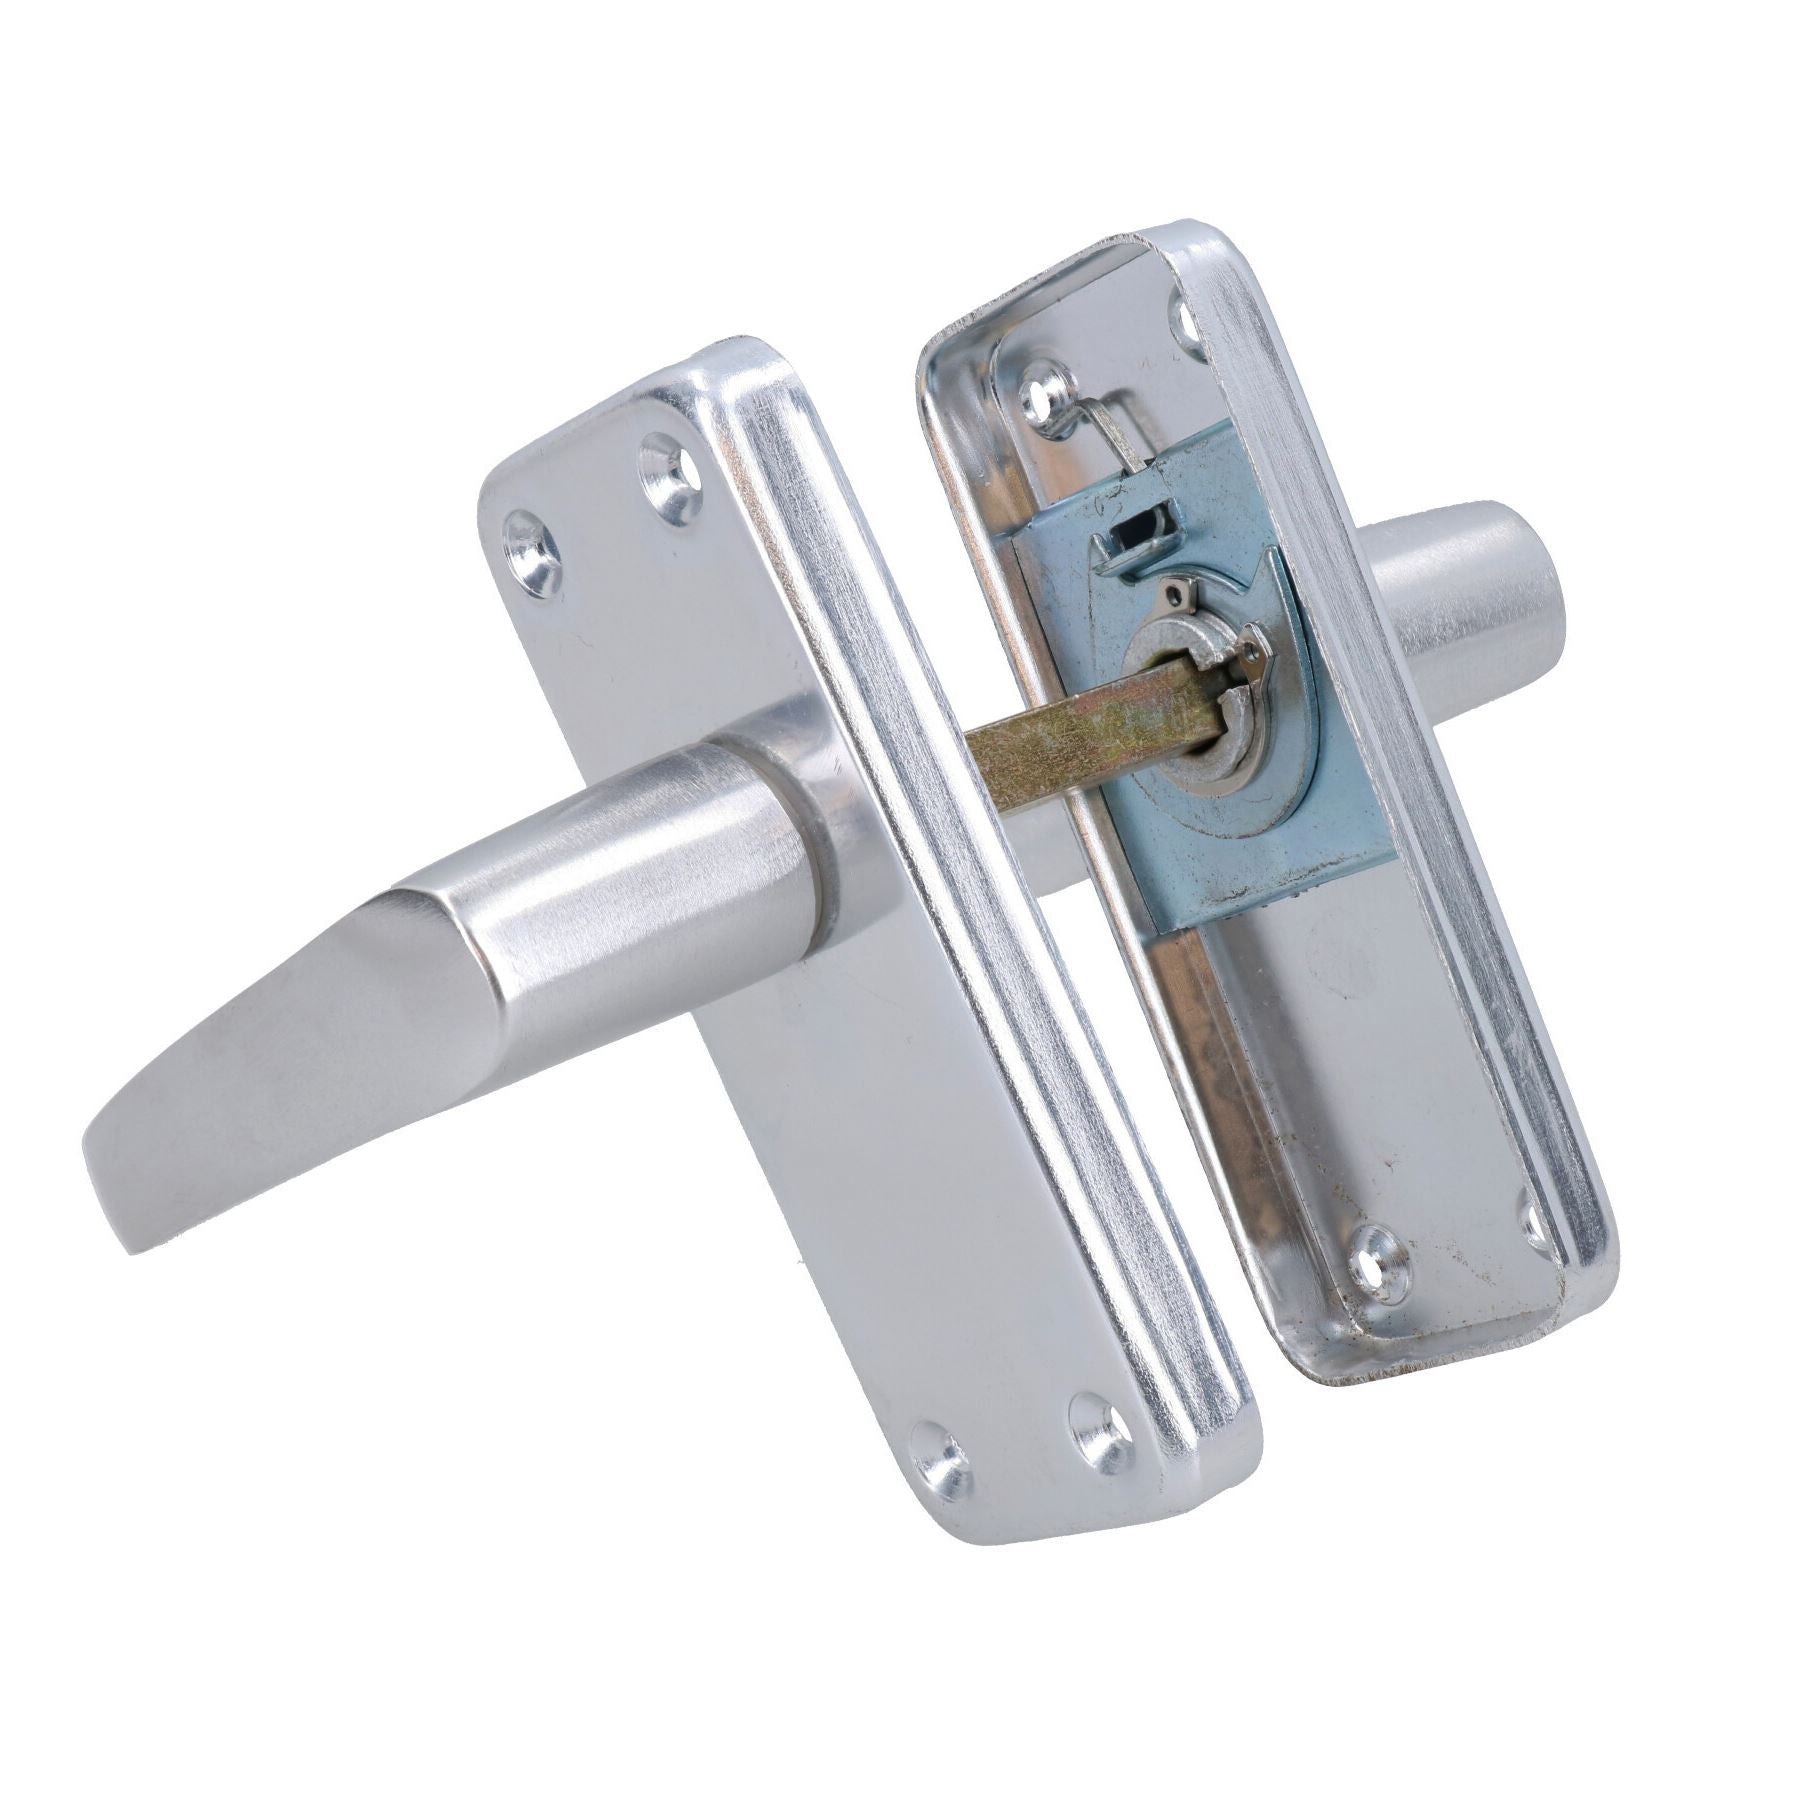 Aluminium Lever Lock Door Handle Handles 100mm x 40mm With Spindle + Fixings